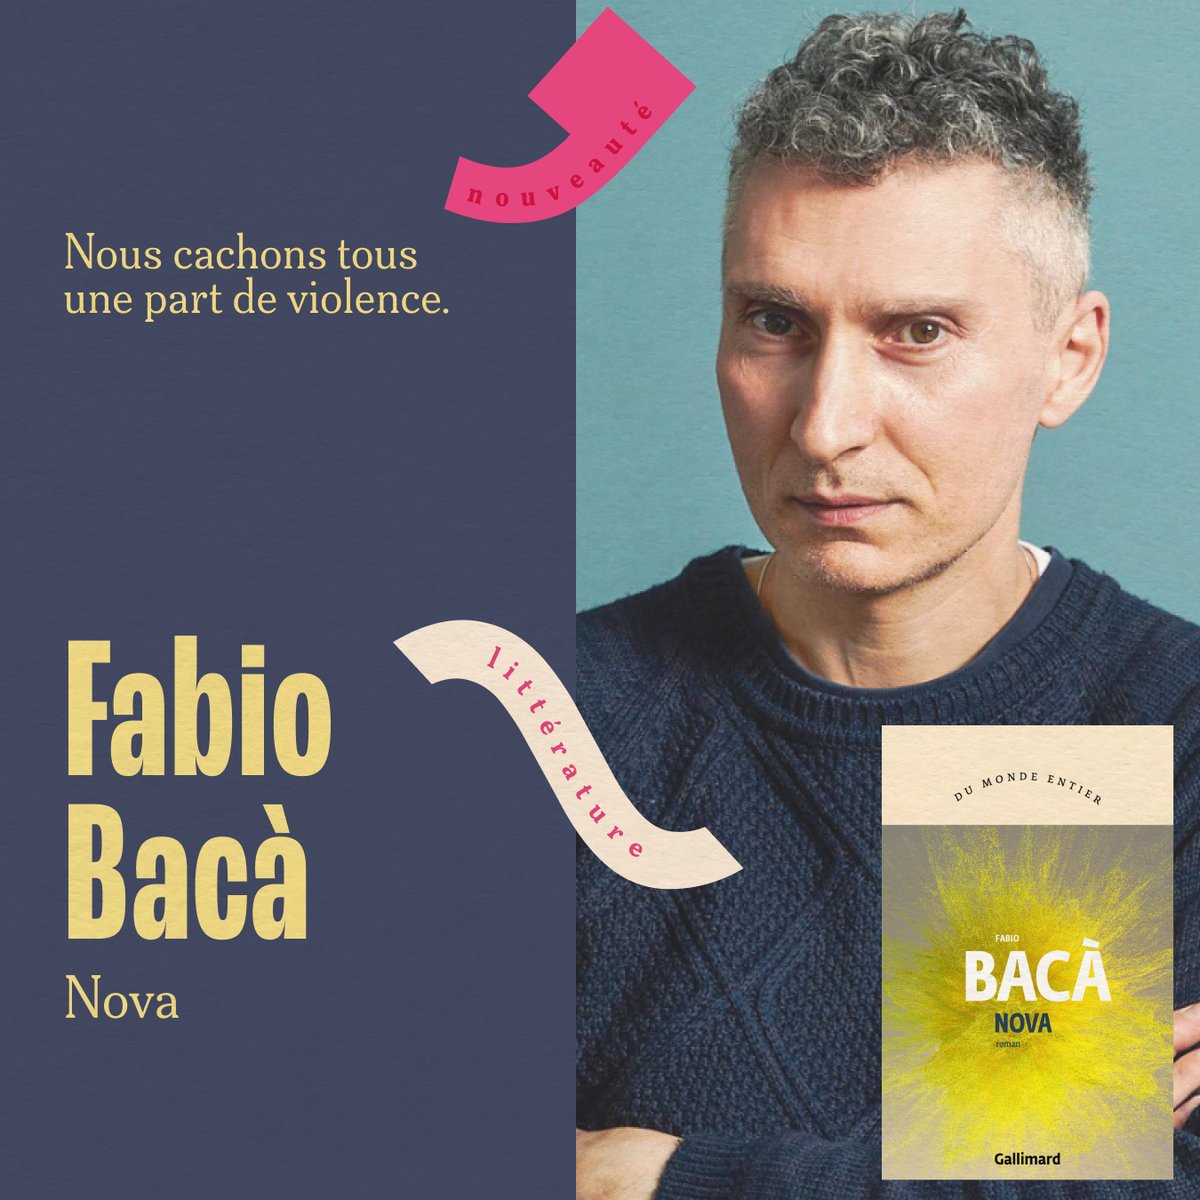 #DUMONDEENTIER Avec son ironie subtile et un style inimitable, Fabio Bacà pose une nouvelle fois son regard acéré sur le quotidien, en nous invitant à réfléchir à la part obscure et primitive présente en chacun de nous. Découvrez 'Nova' ▶️ gallimard.fr/Catalogue/GALL…